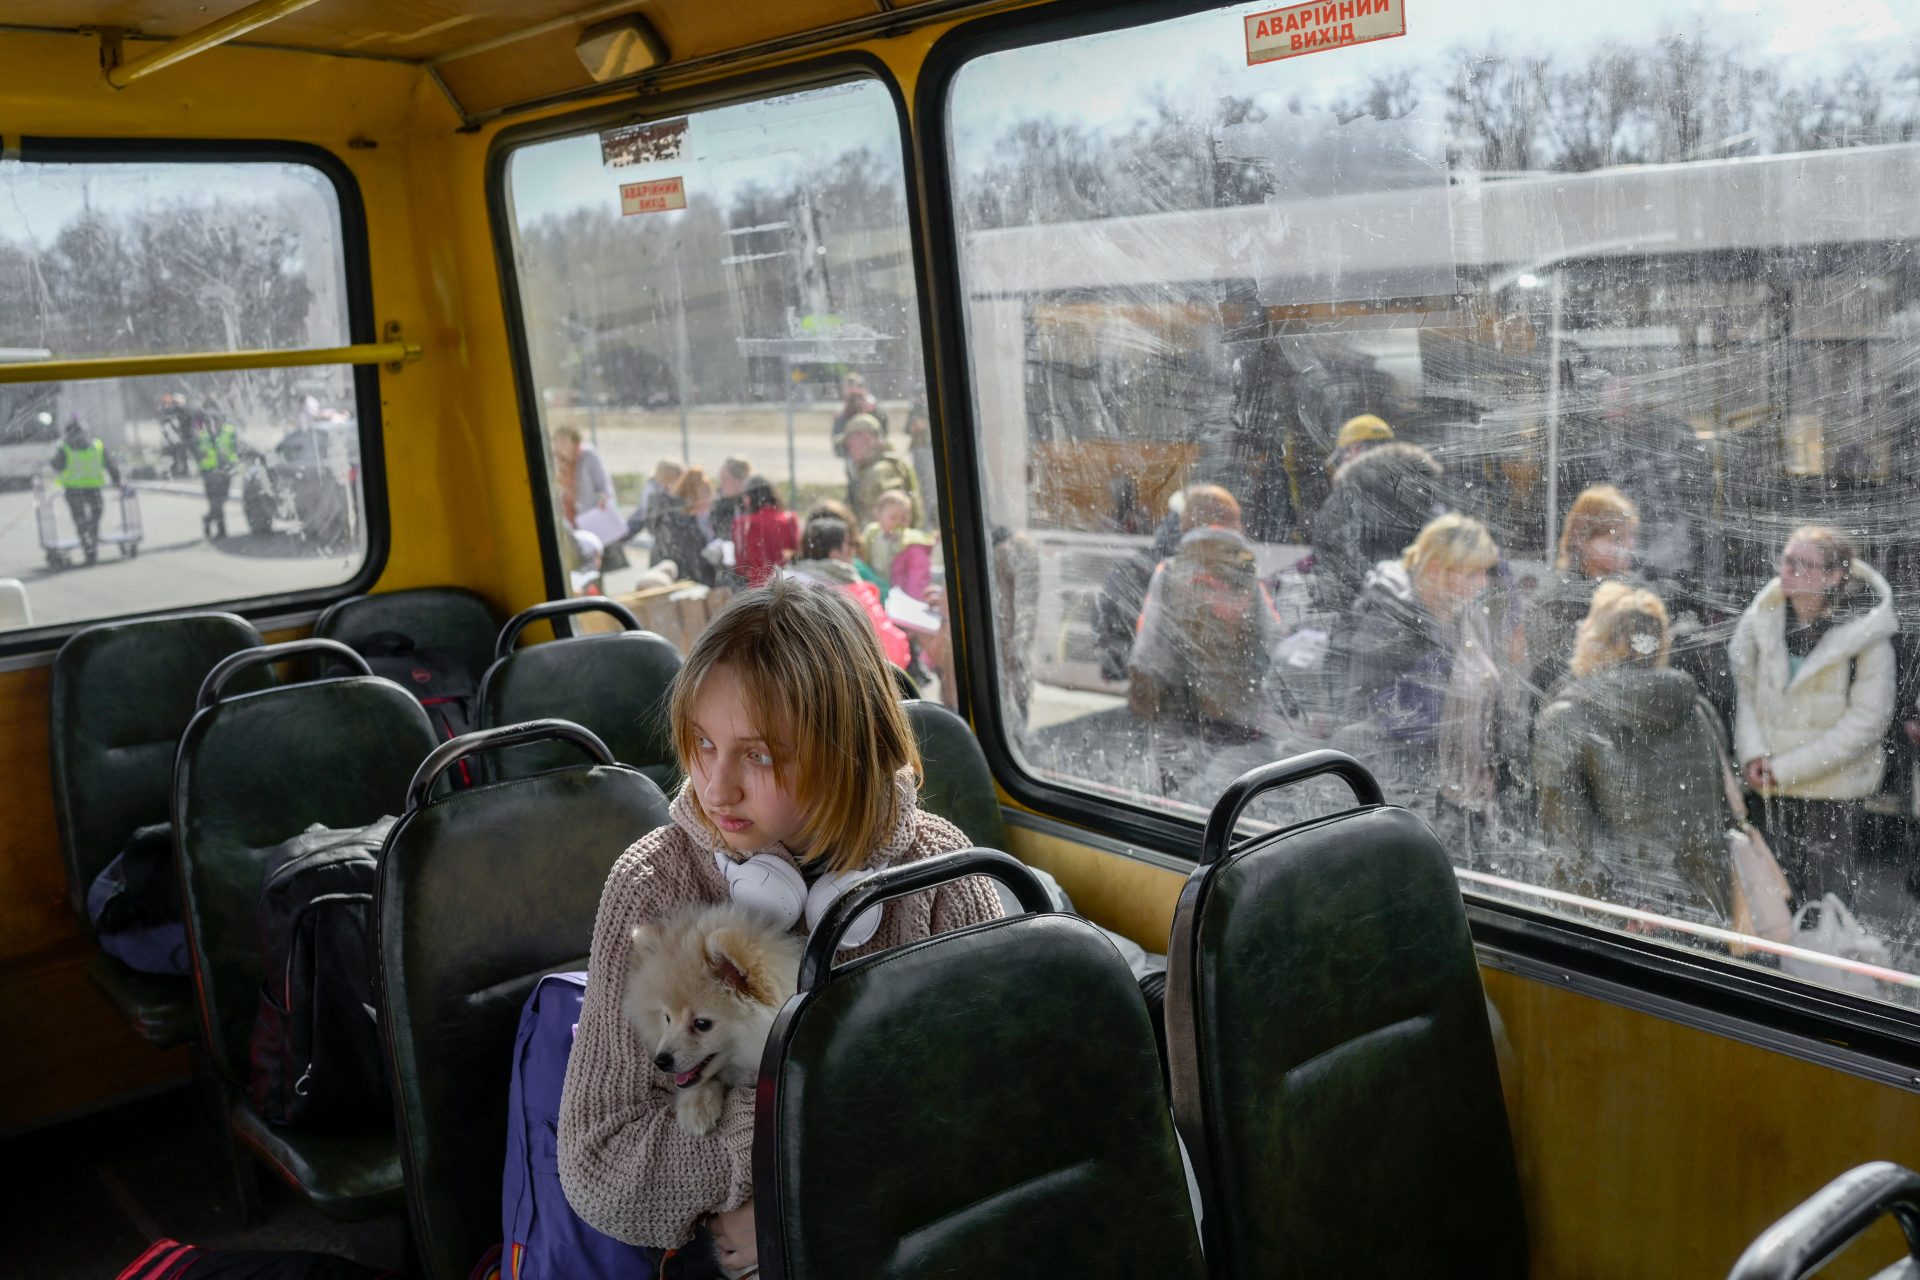 Ukraine says since Feb. 2022 between 200,000 - 300,000 kids have been taken to Russia